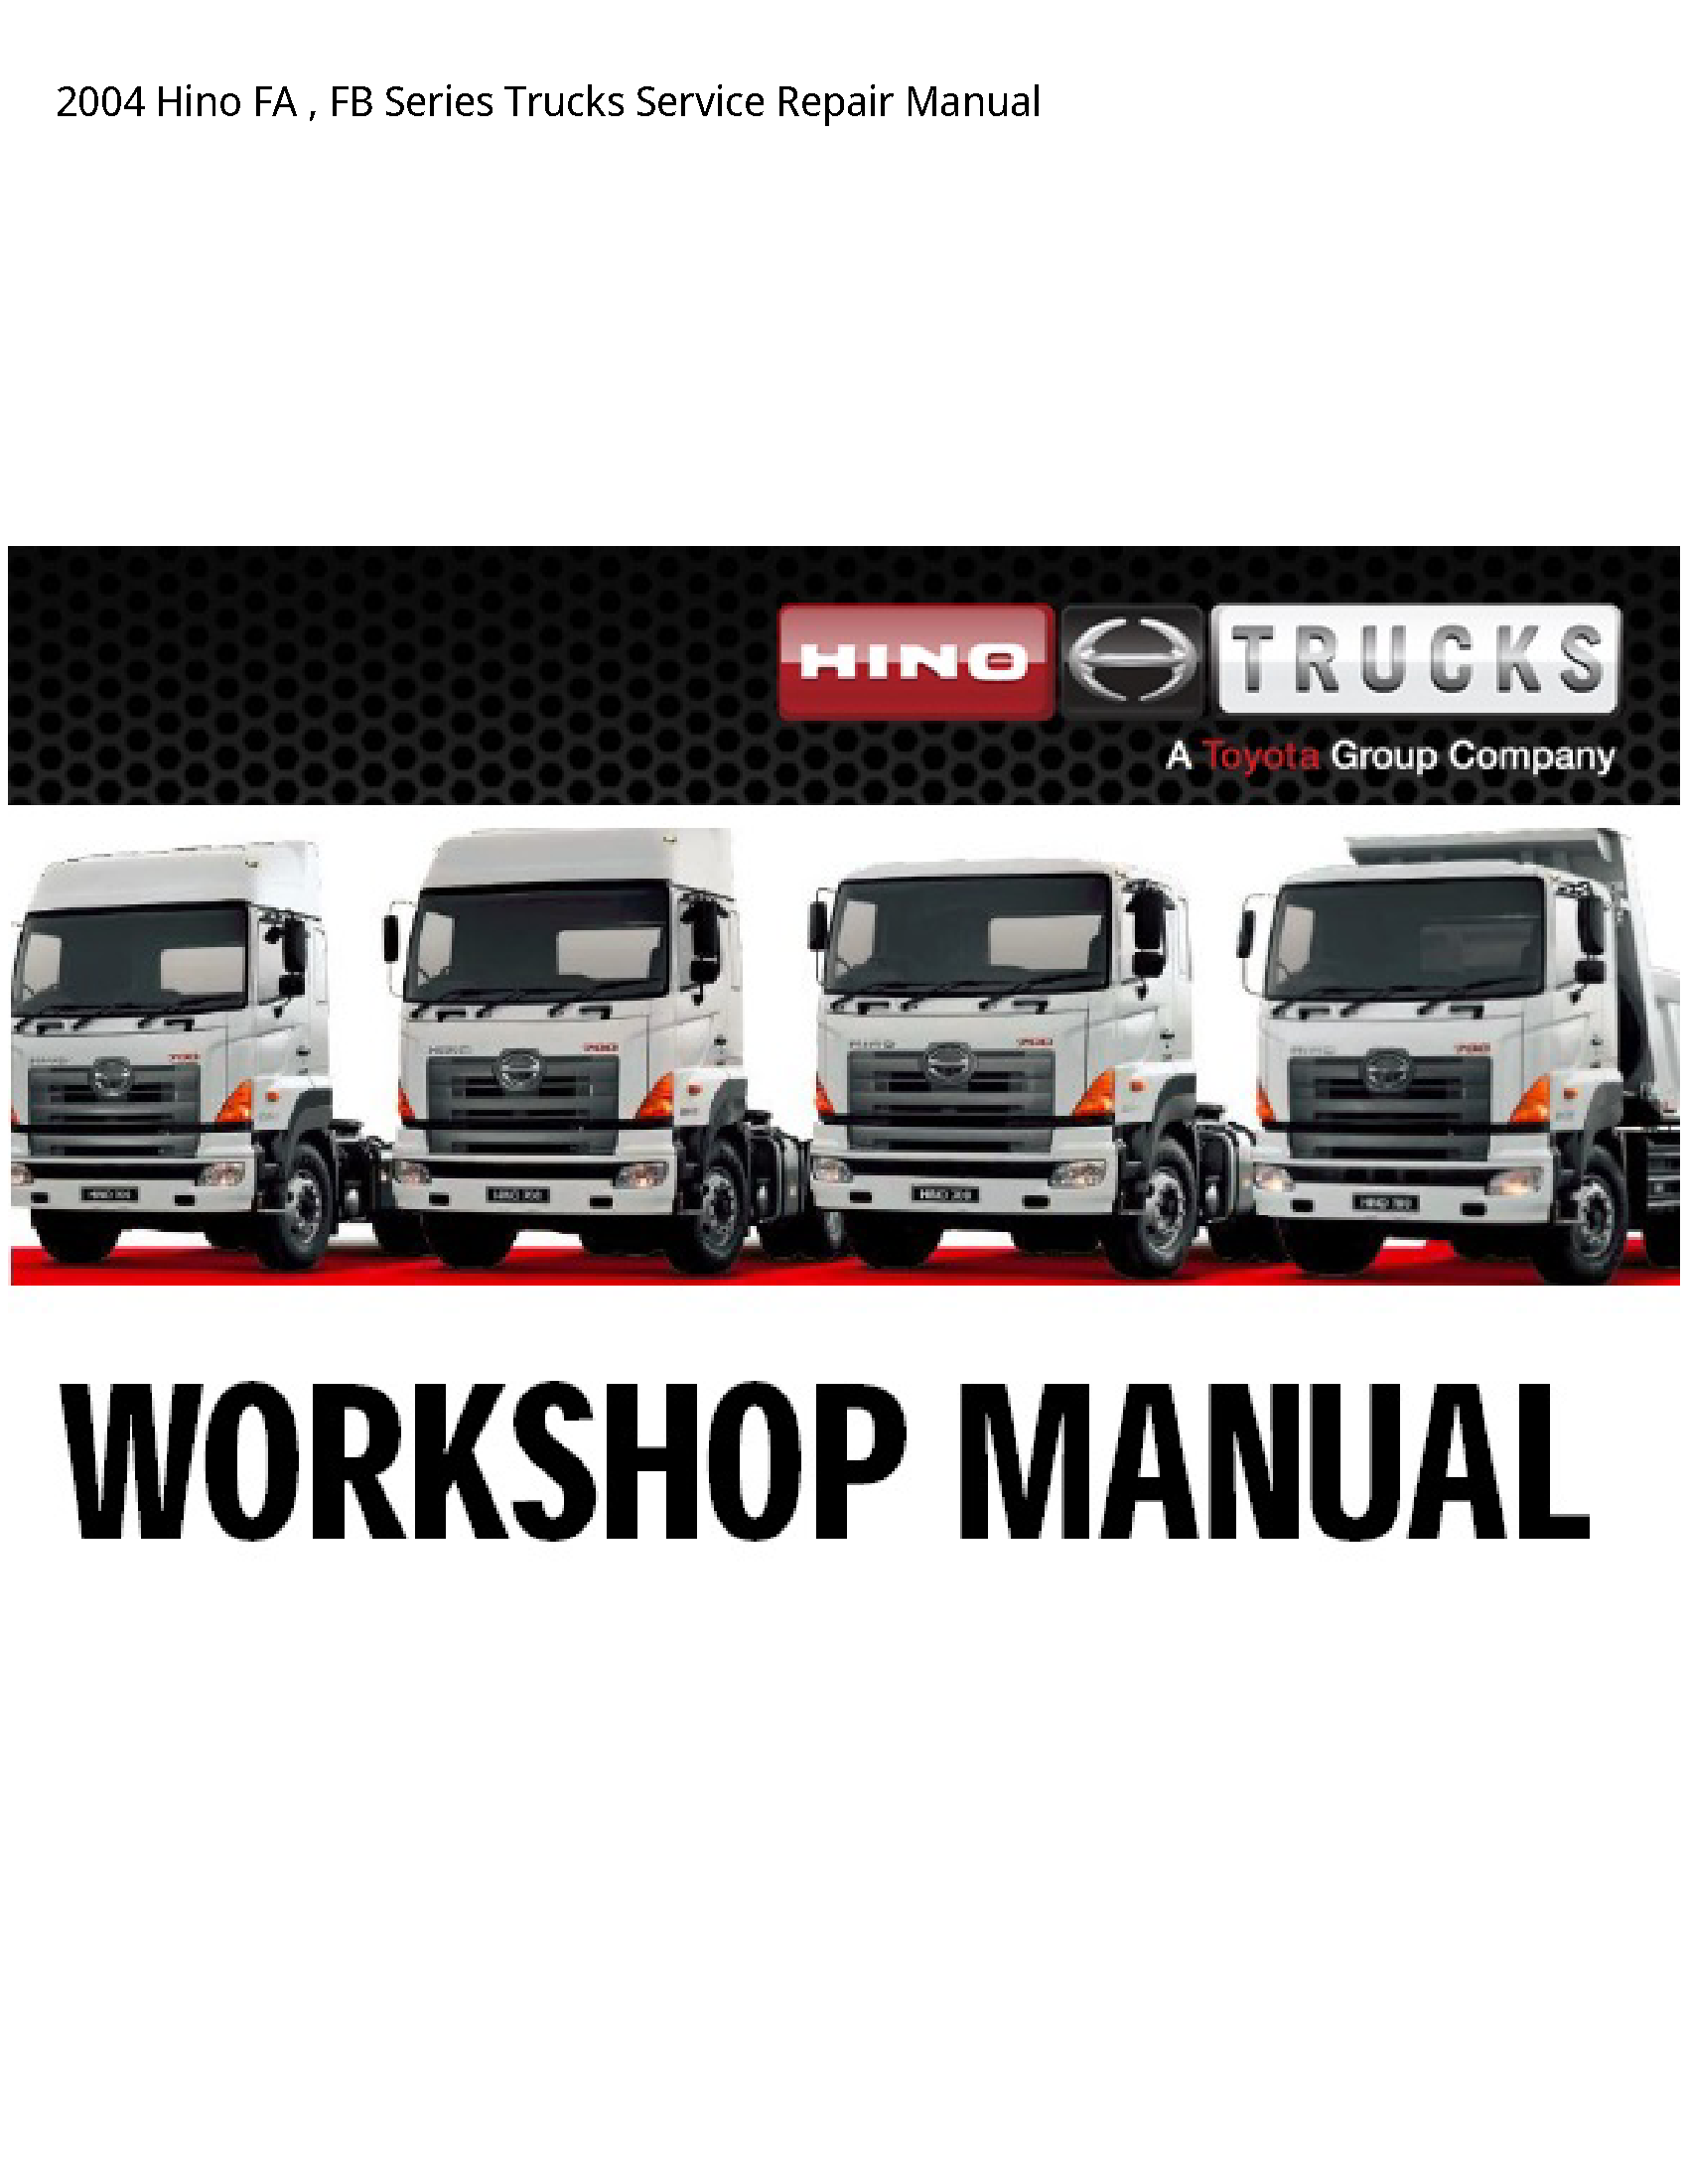 Hino FA FB Series Trucks manual